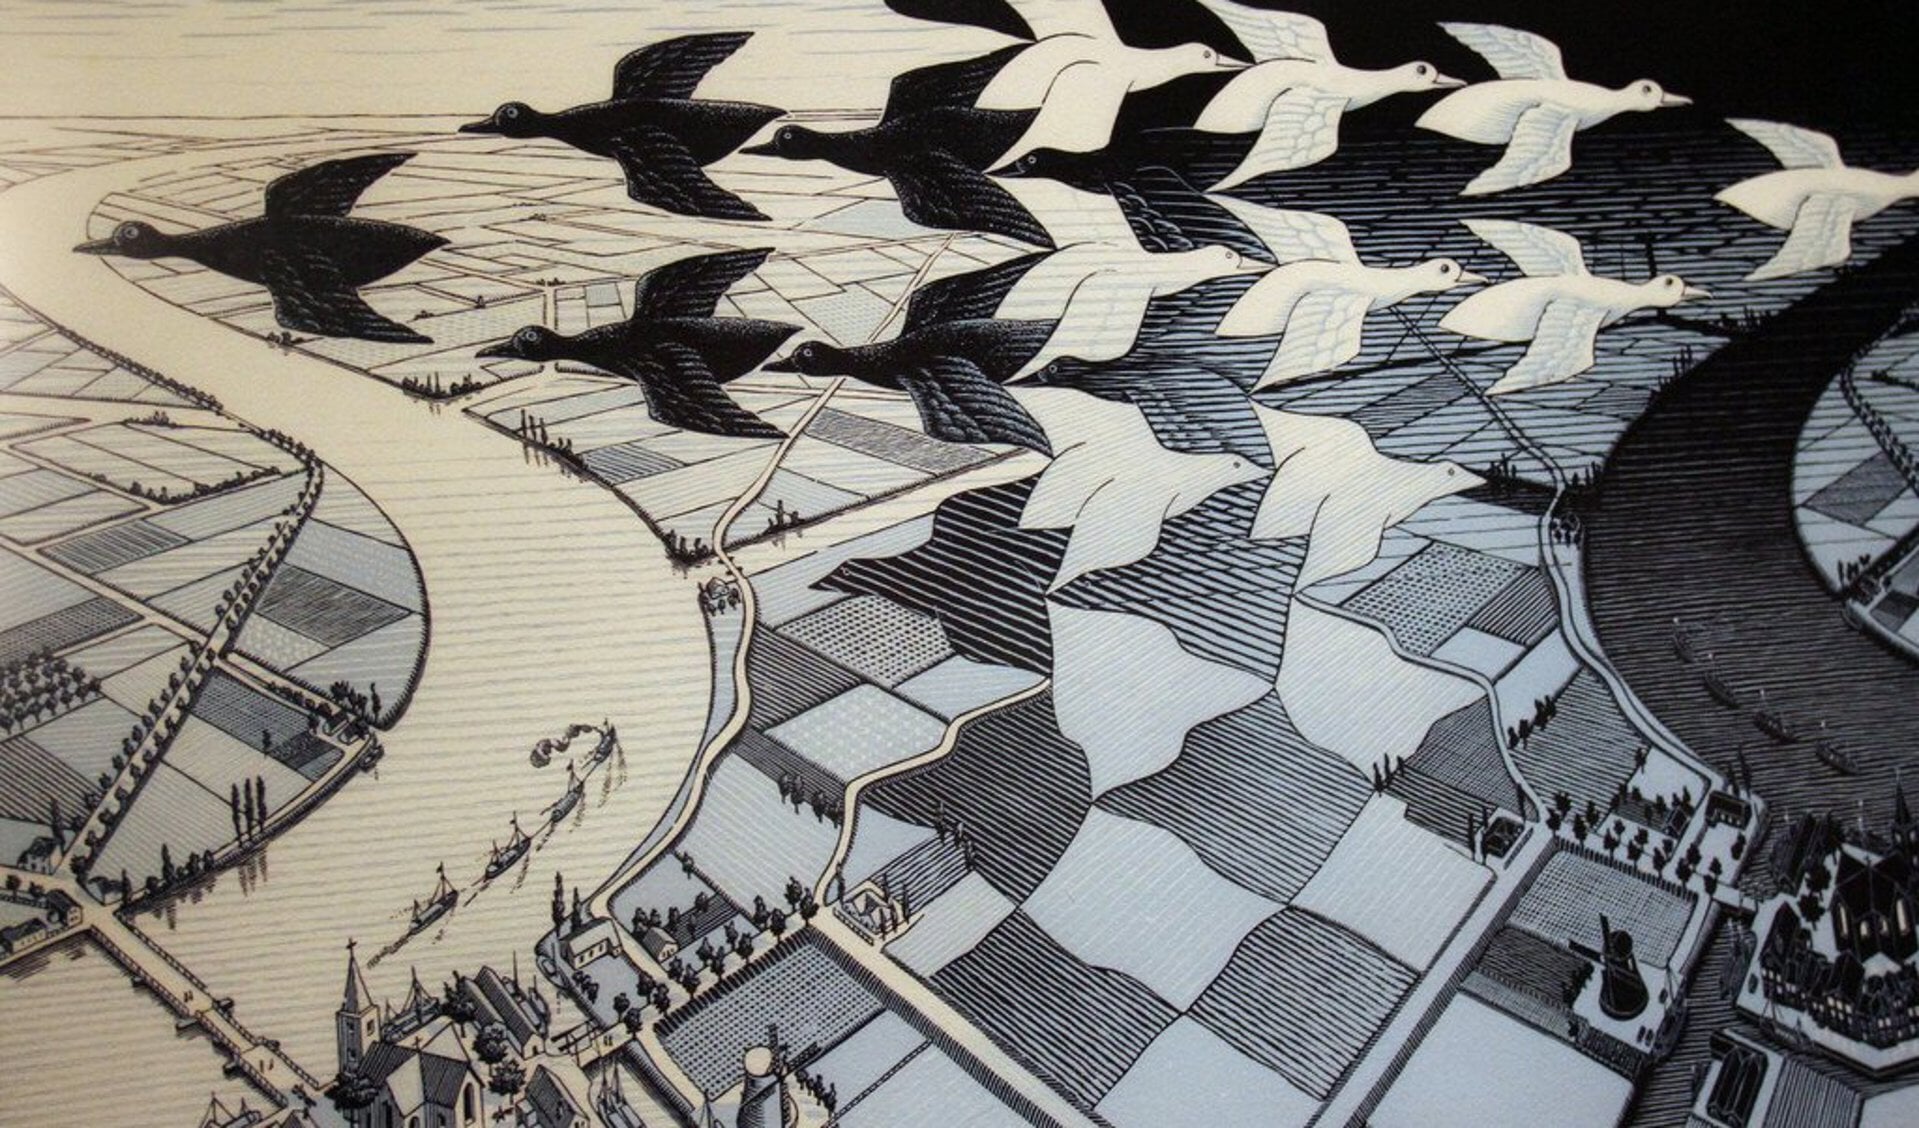 Het werk van Escher moet meer zichtbaar worden in Baarn.